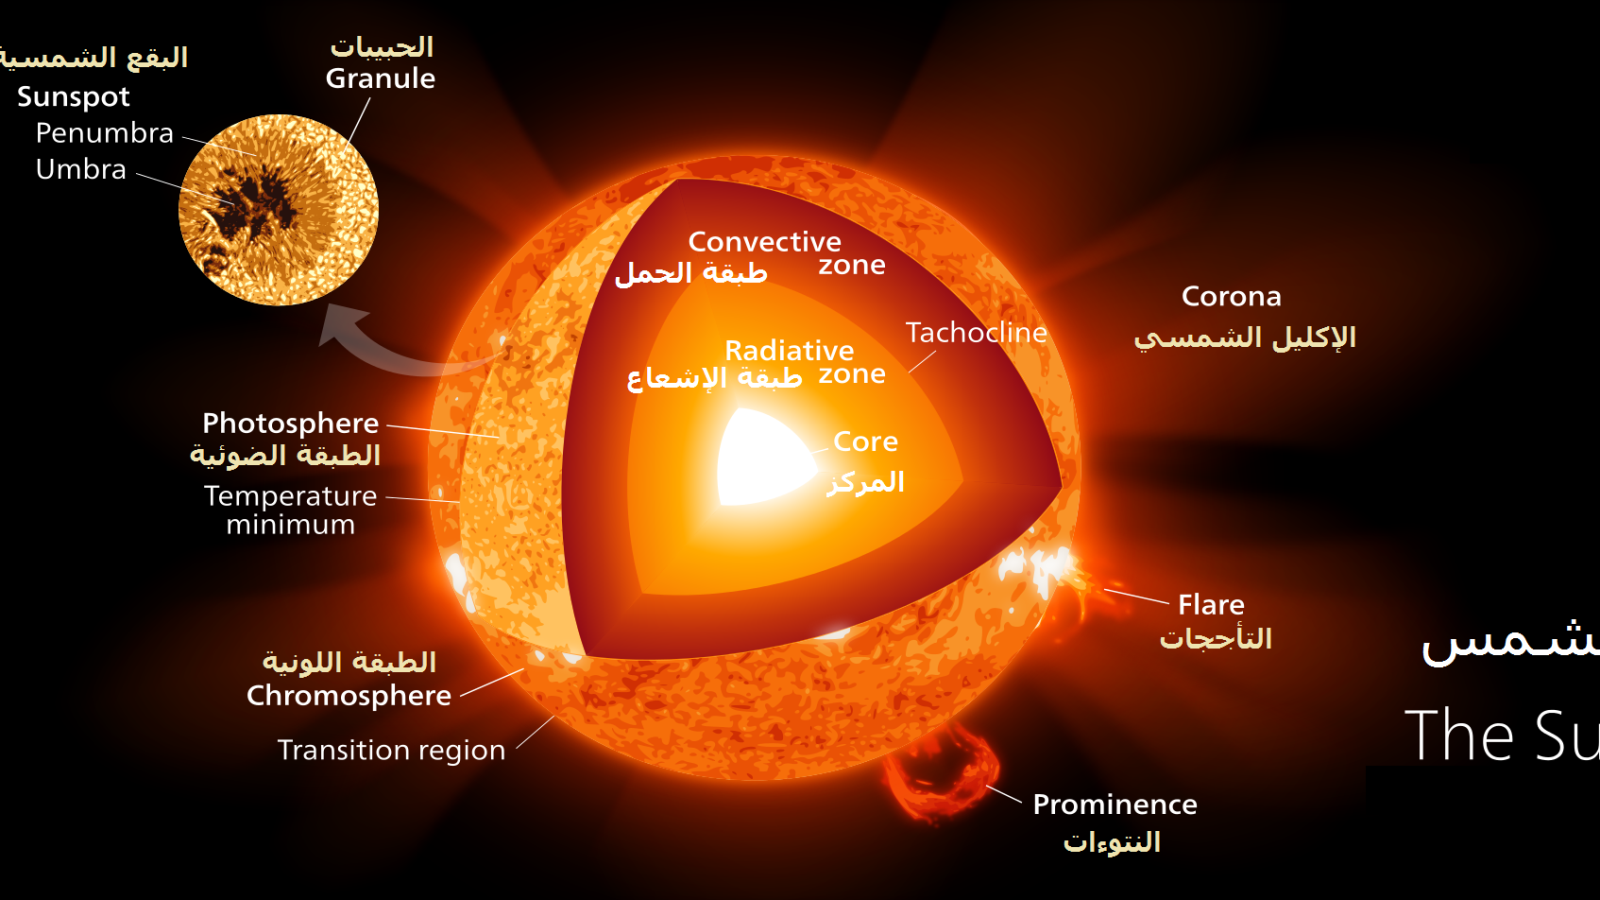 ‪طبقات الشمس حيث تصدر الأصوات المختلفة (تعريب الباحث لصورة من ناسا)‬ طبقات الشمس حيث تصدر الأصوات المختلفة (تعريب الباحث لصورة من ناسا)